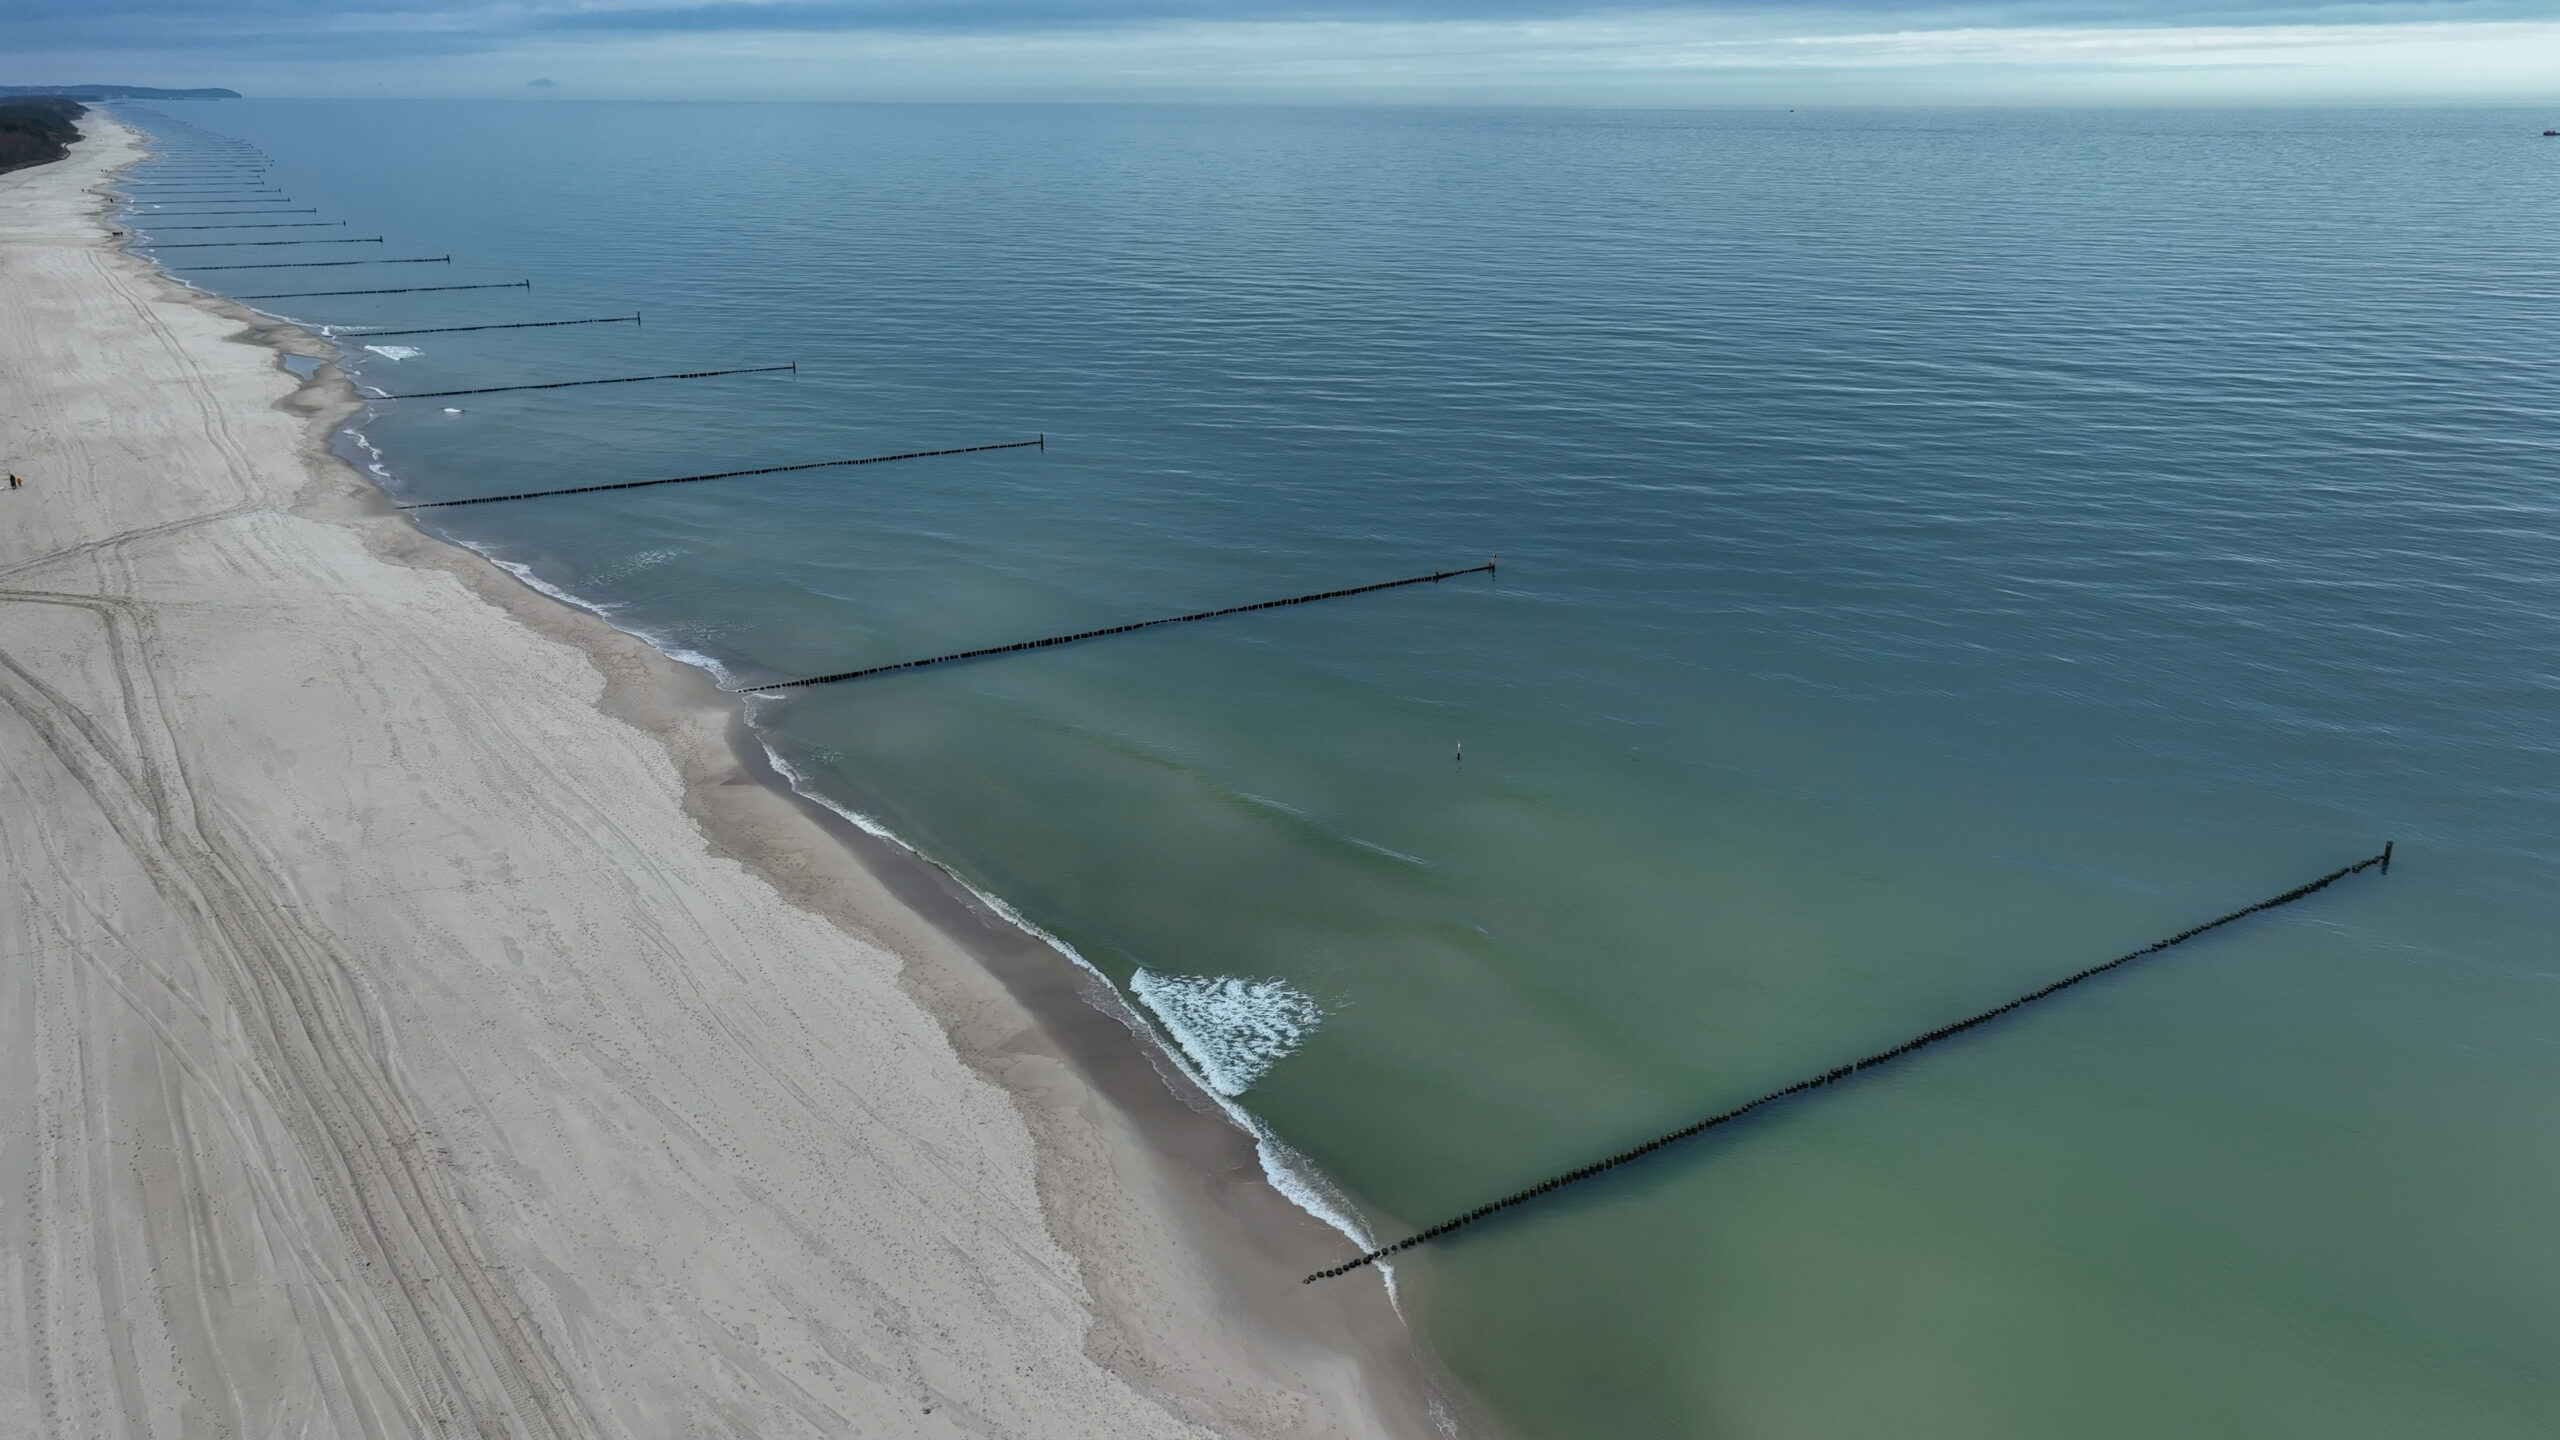 Urząd Morski w Gdyni znacząco wzmocnił ochronę brzegu w rejonie Półwyspu Helskiego